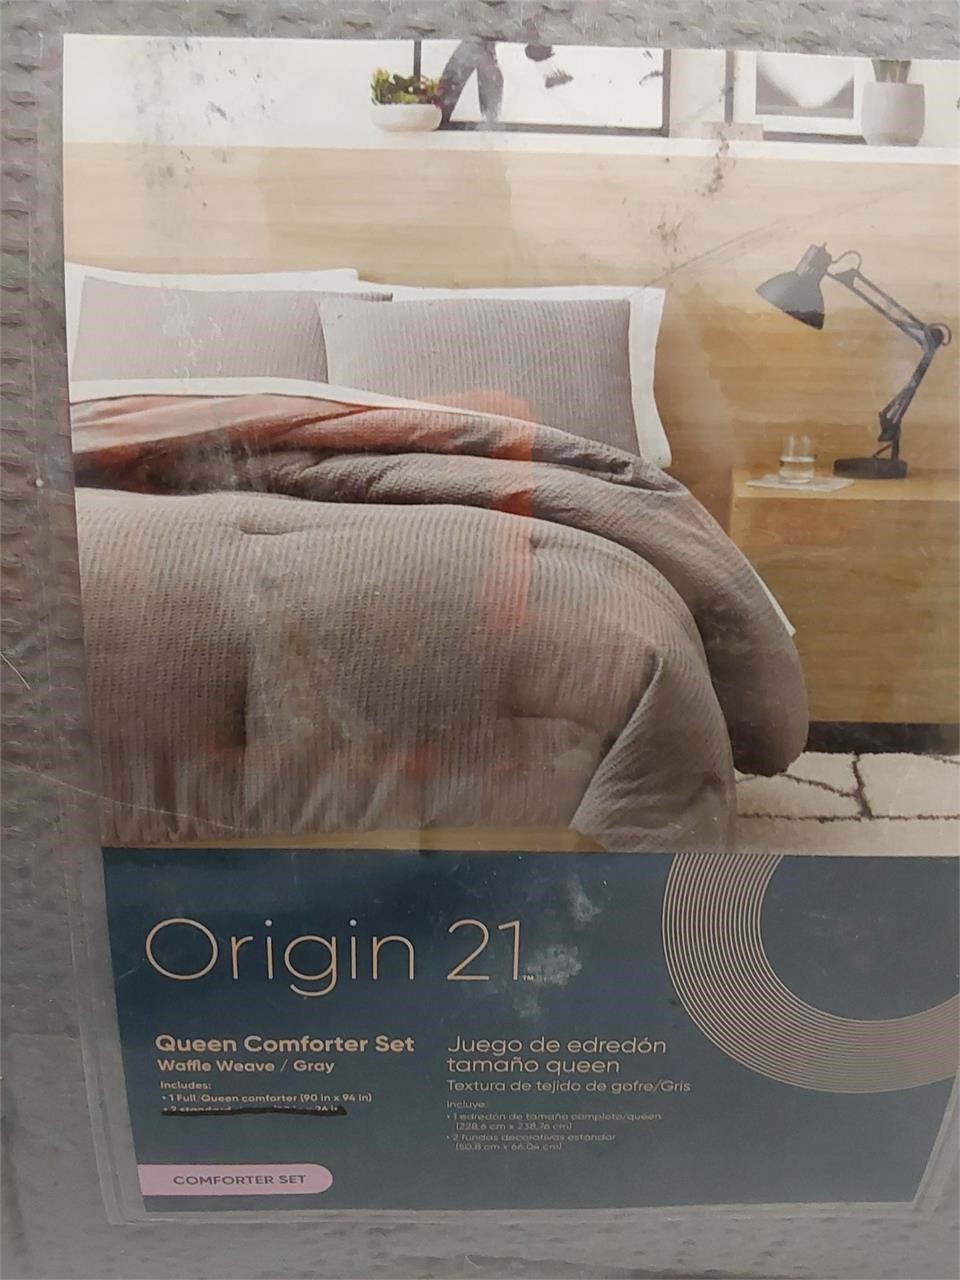 Origin 21 Queen Comforter